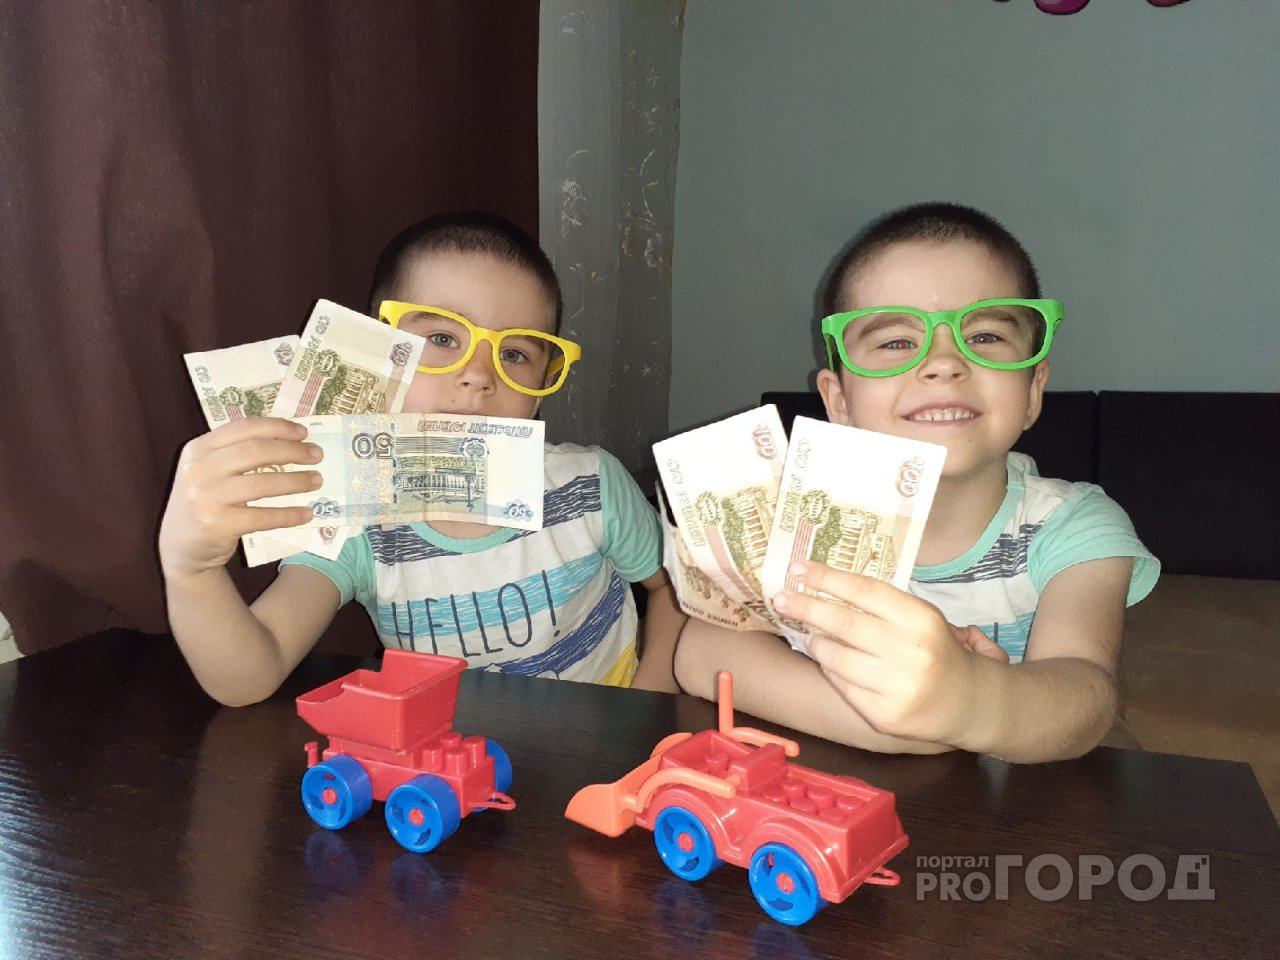 «А дети после 16 лет не едят?»: пензенцы о путинских выплатах